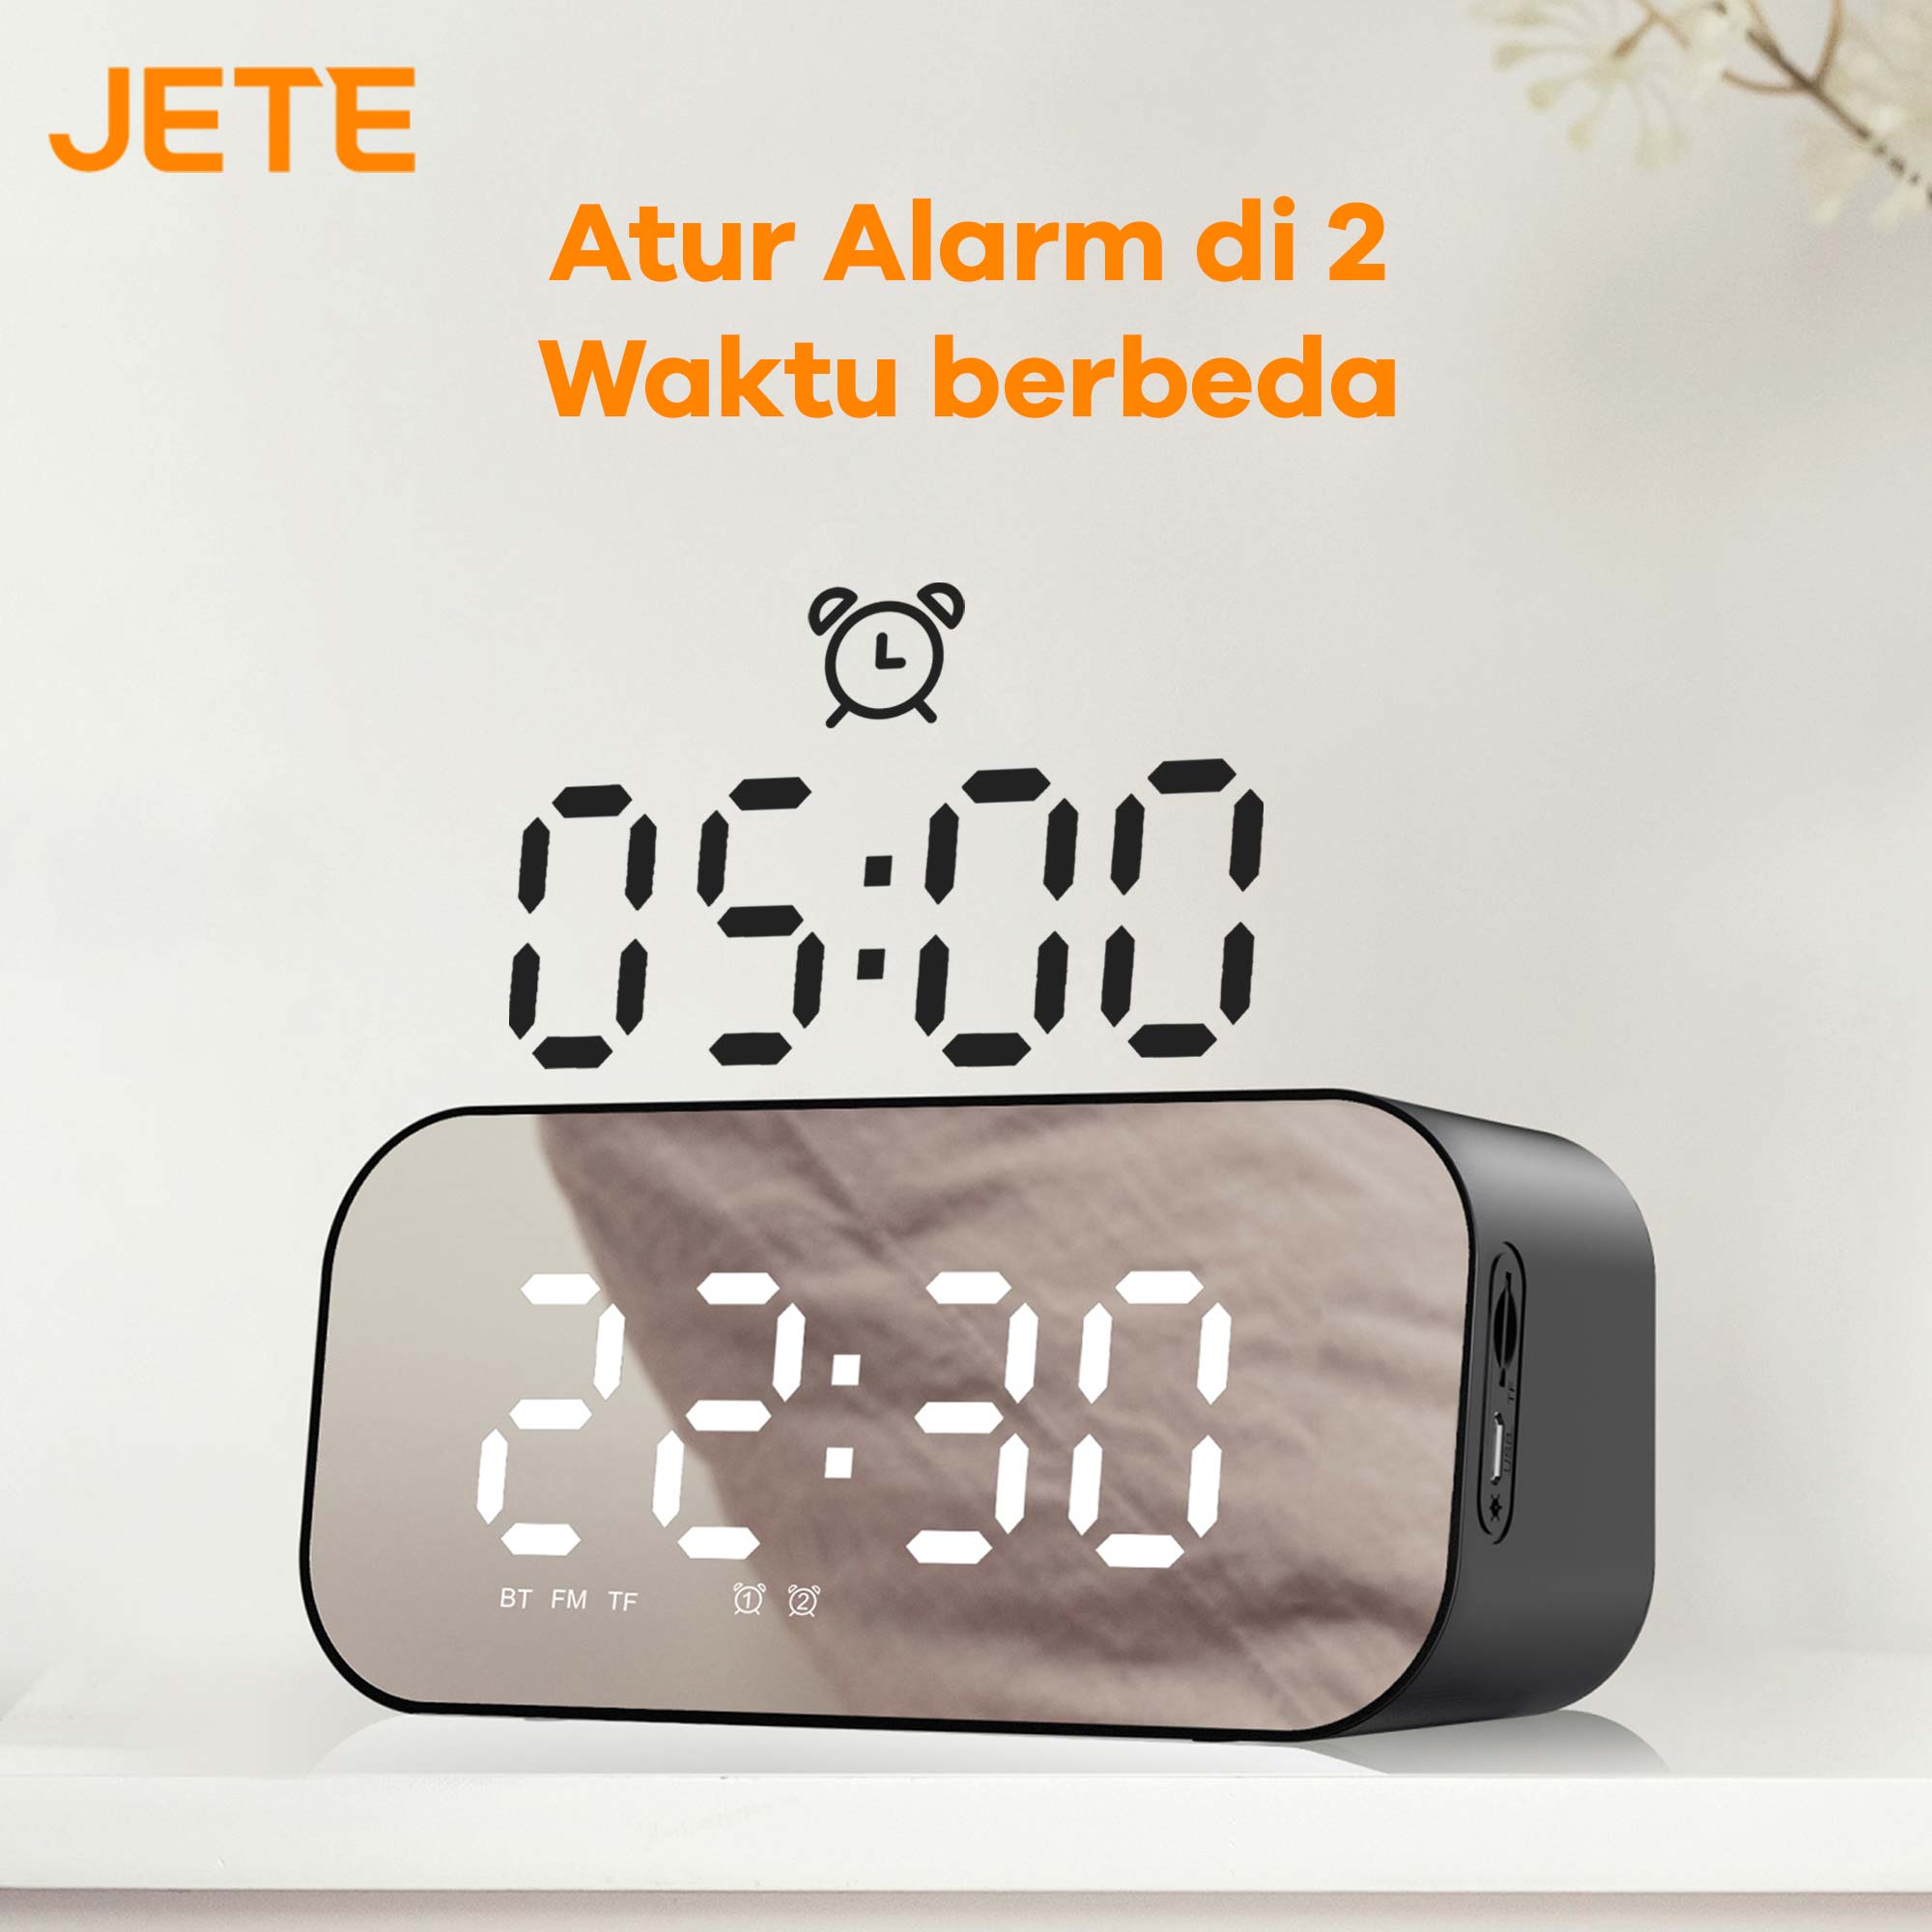 JETE S2 Speaker Jam Digital Portable dapat mengatur alarm di 2 waktu berbeda